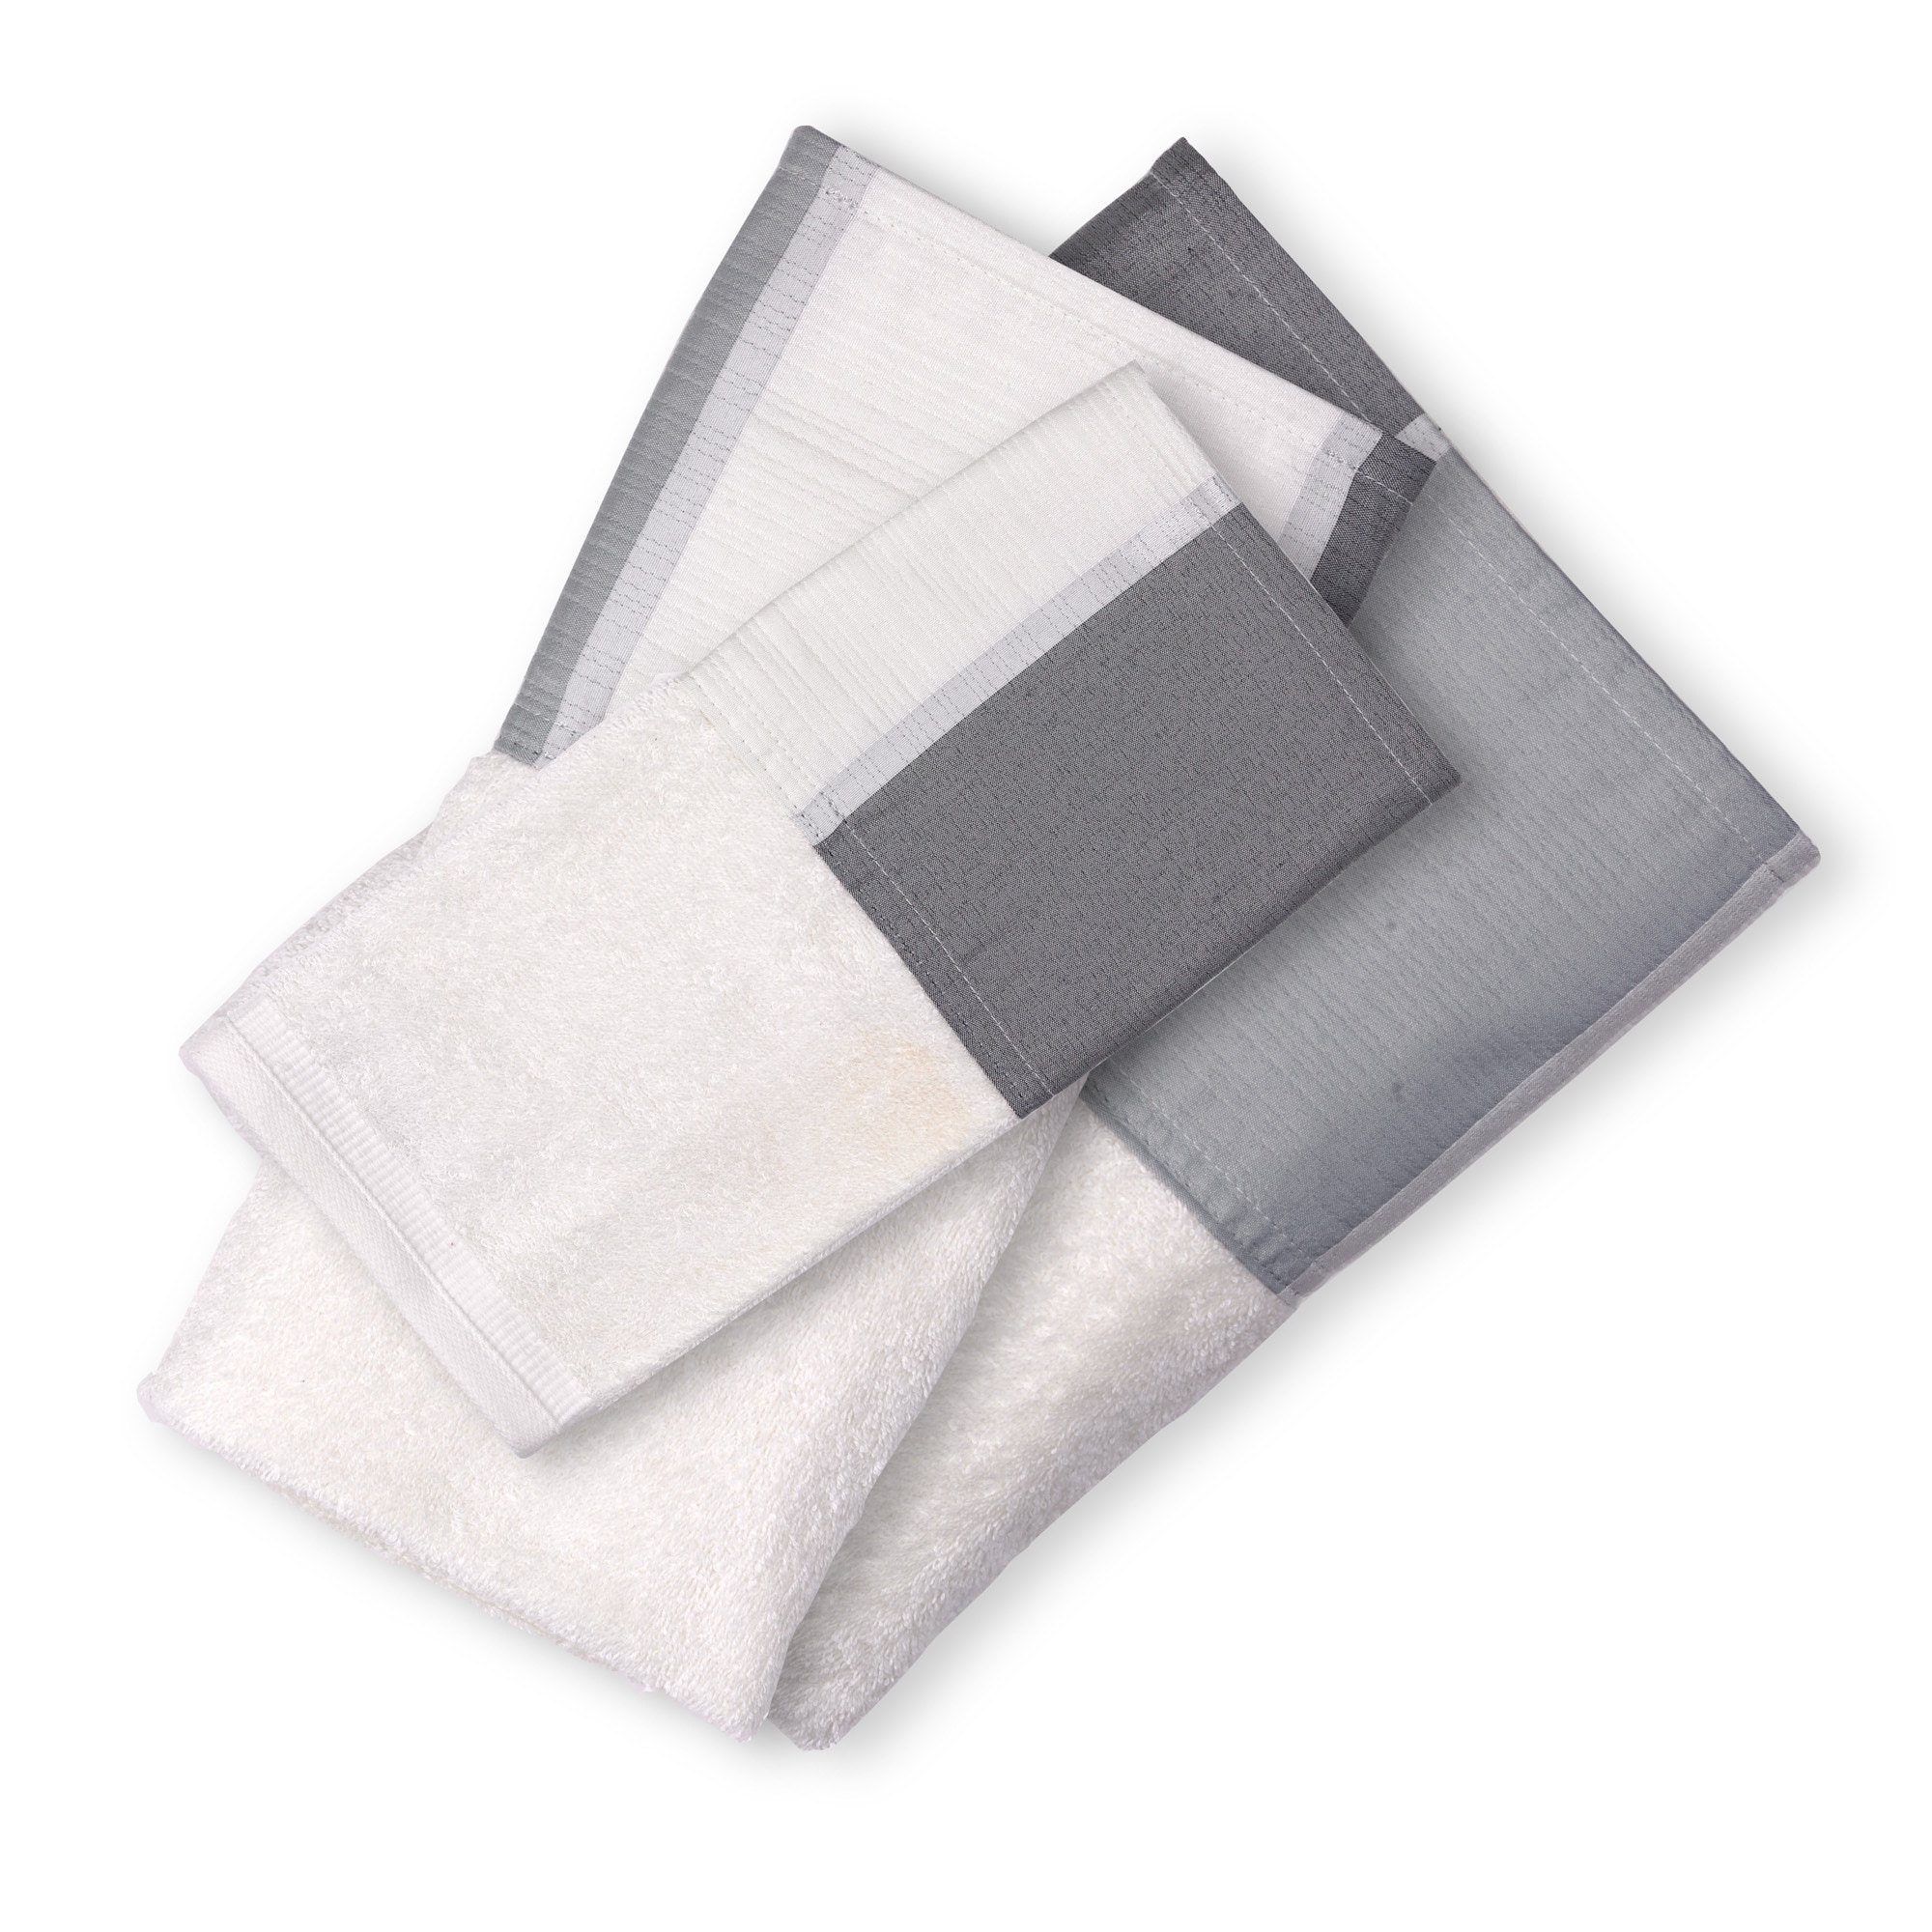 https://ak1.ostkcdn.com/images/products/19809990/Modern-Line-3-Piece-Towel-Set-Grey-87b90110-700d-4270-9833-1d90323744e9.jpg